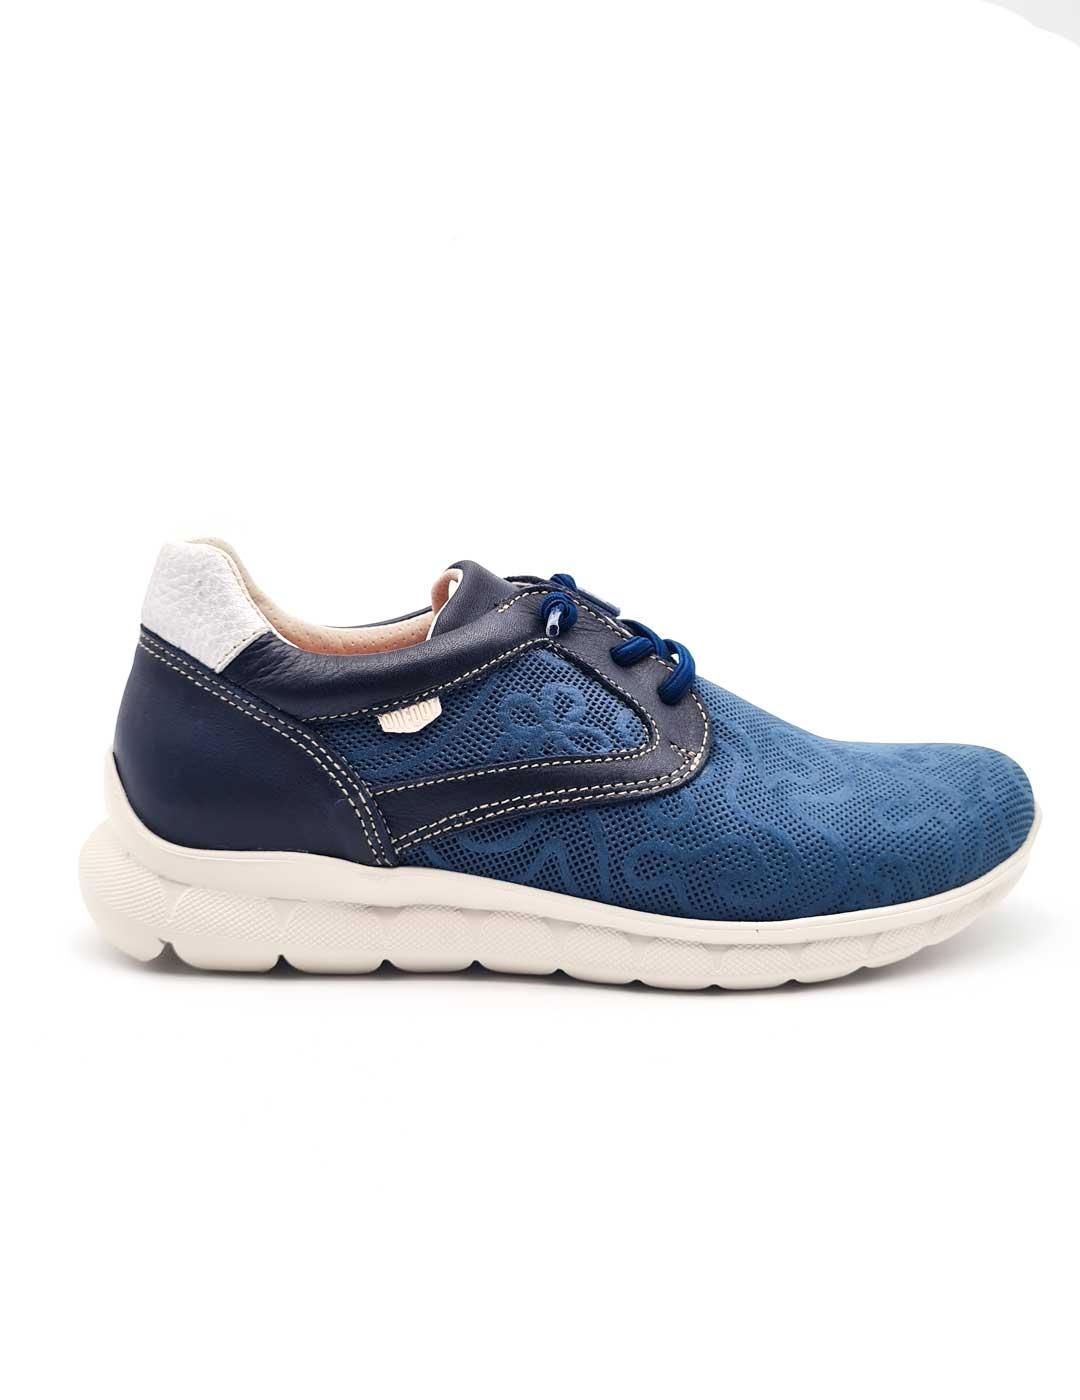 On Foot - On Foot Zapato Deportivo Mujer 40111 Azul Marino Confort Elástico Diseño Floral Piel Extraíble